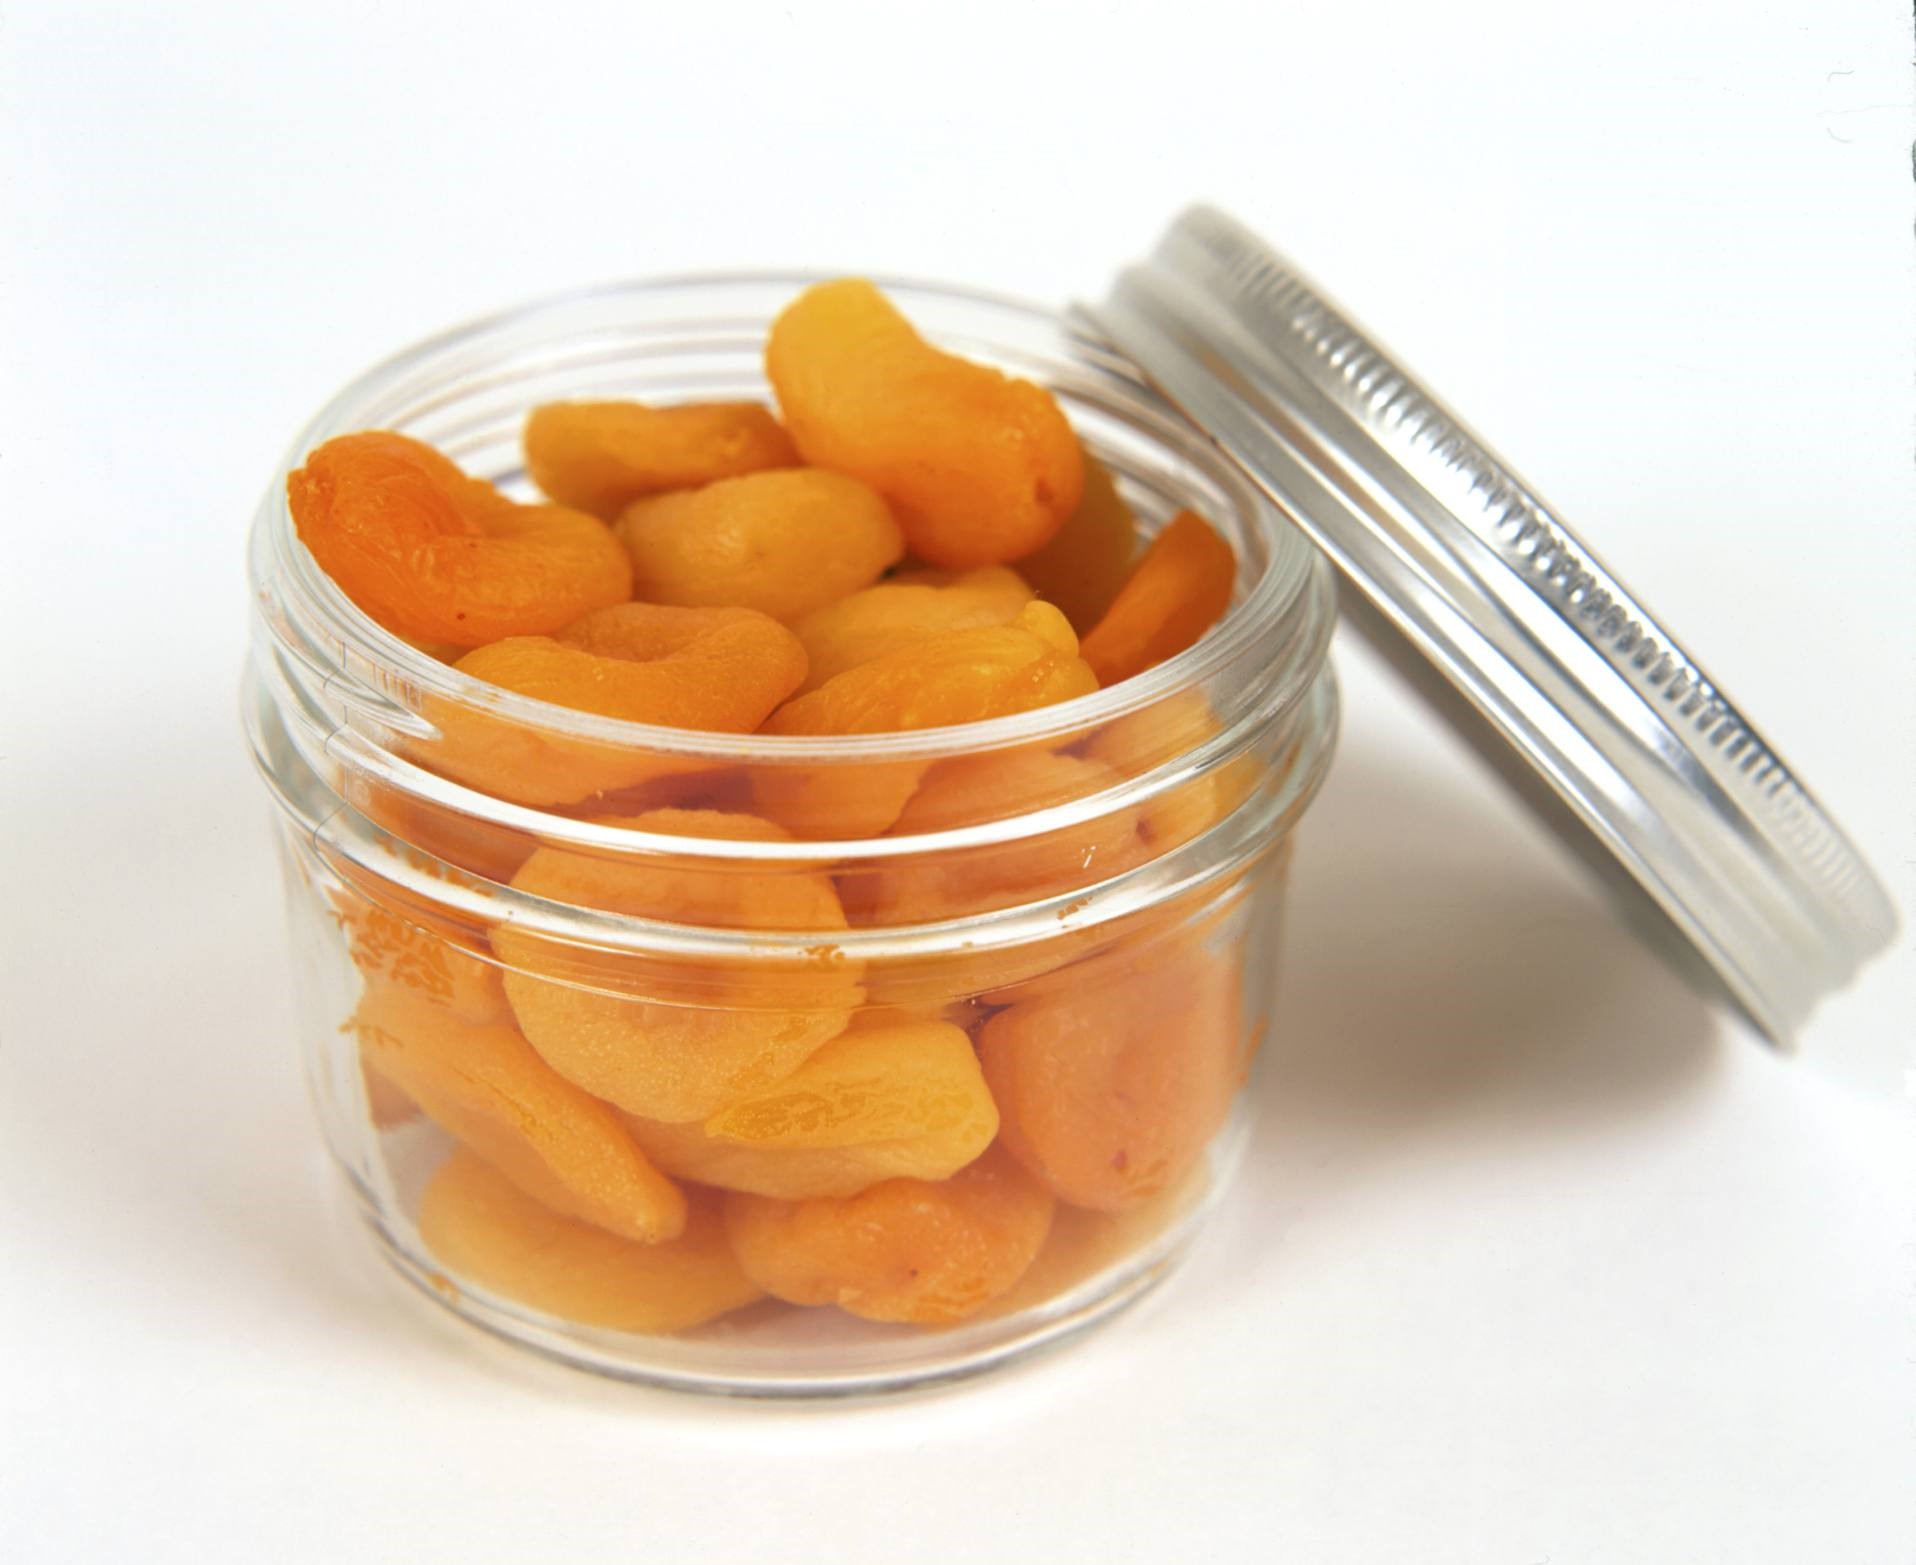 Трудно переоценить полезные свойства абрикосов Сушеные плоды ничем не уступают свежим, но в домашних условиях их нужно правильно хранить Как, где и в чем – расскажем подробно